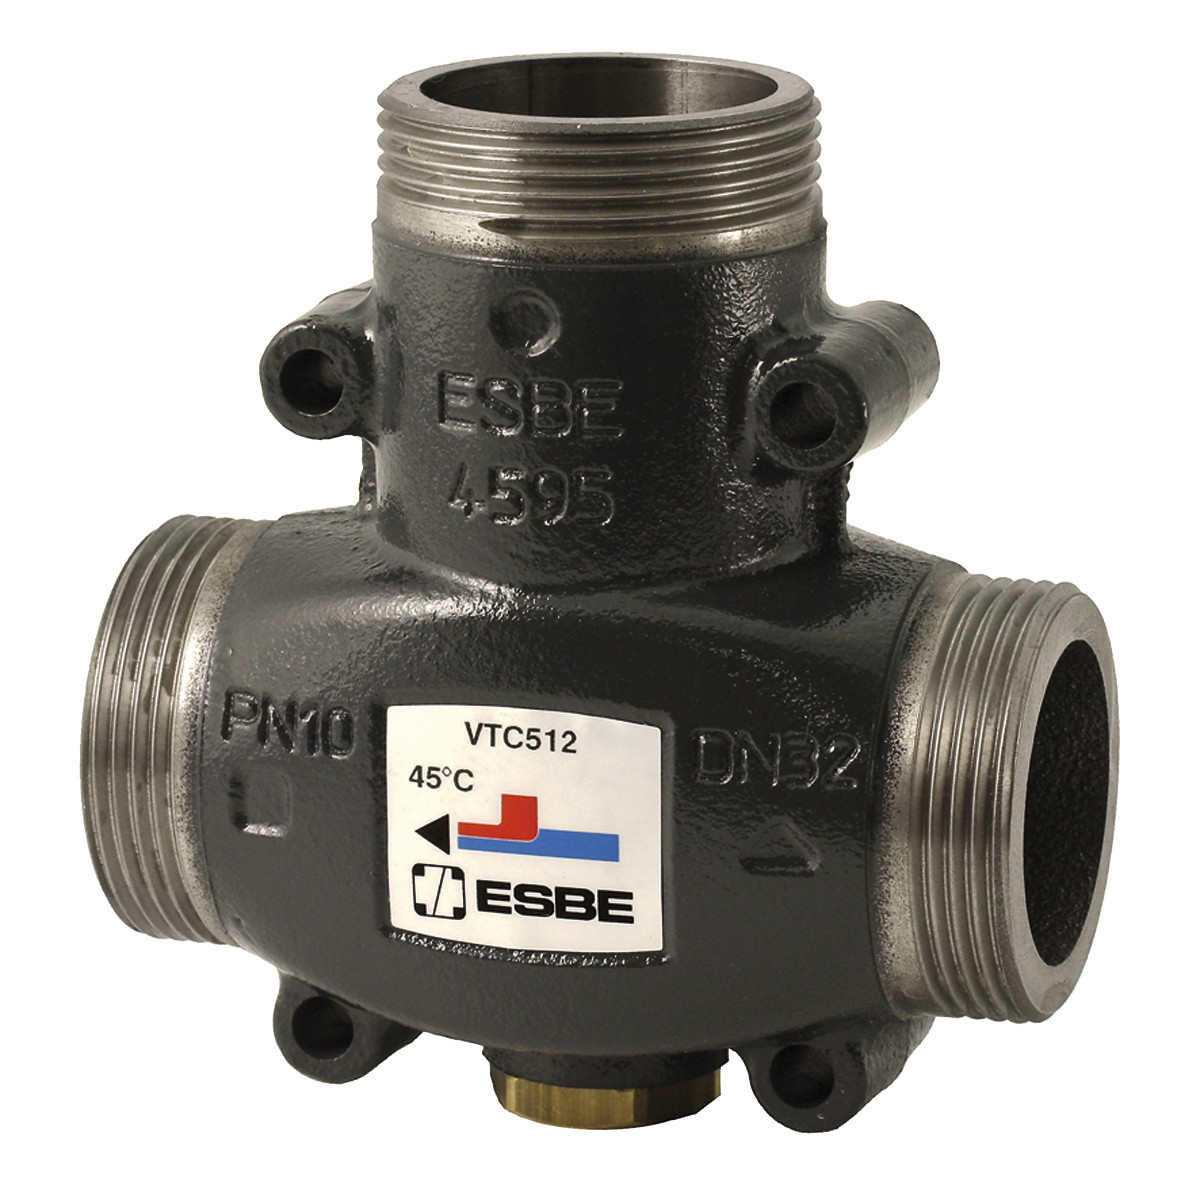 Термостатический смесительный клапан ESBE VTC 512 60°C G 1 1/2" артикул 51022200